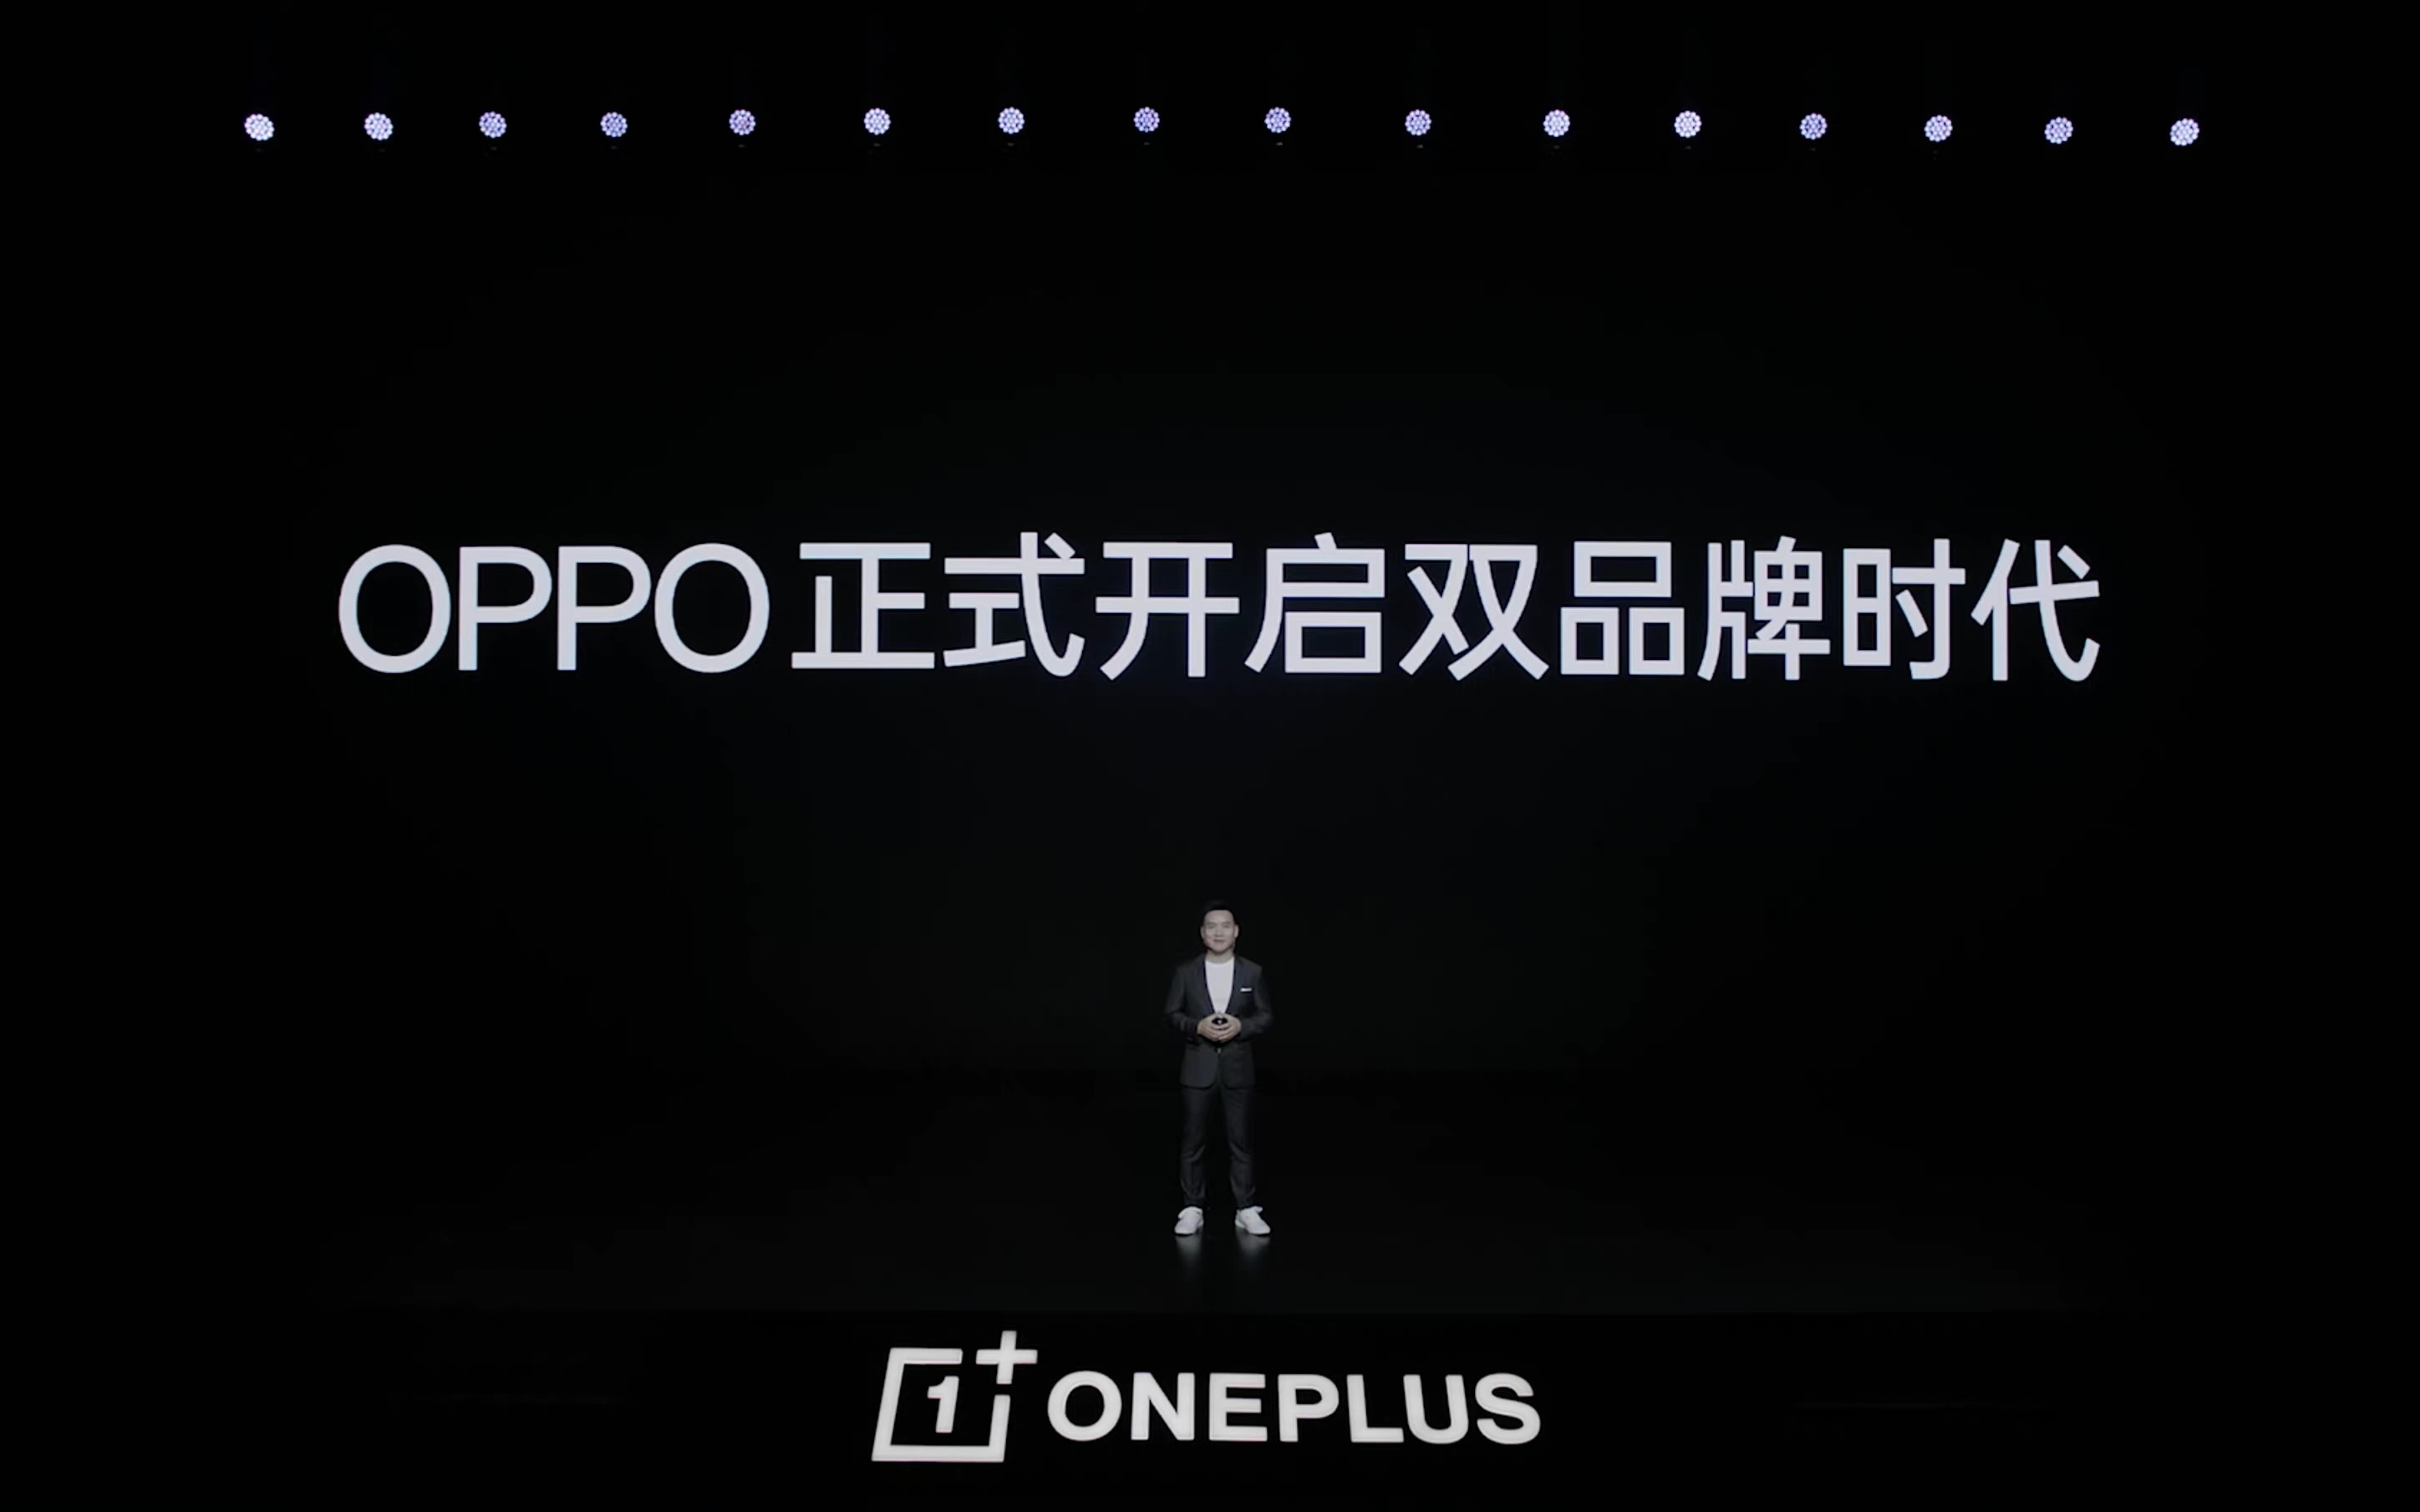 OPPO、一加开启双品牌时代，OPPO 将为一加提供资金、技术、渠道和服务支持